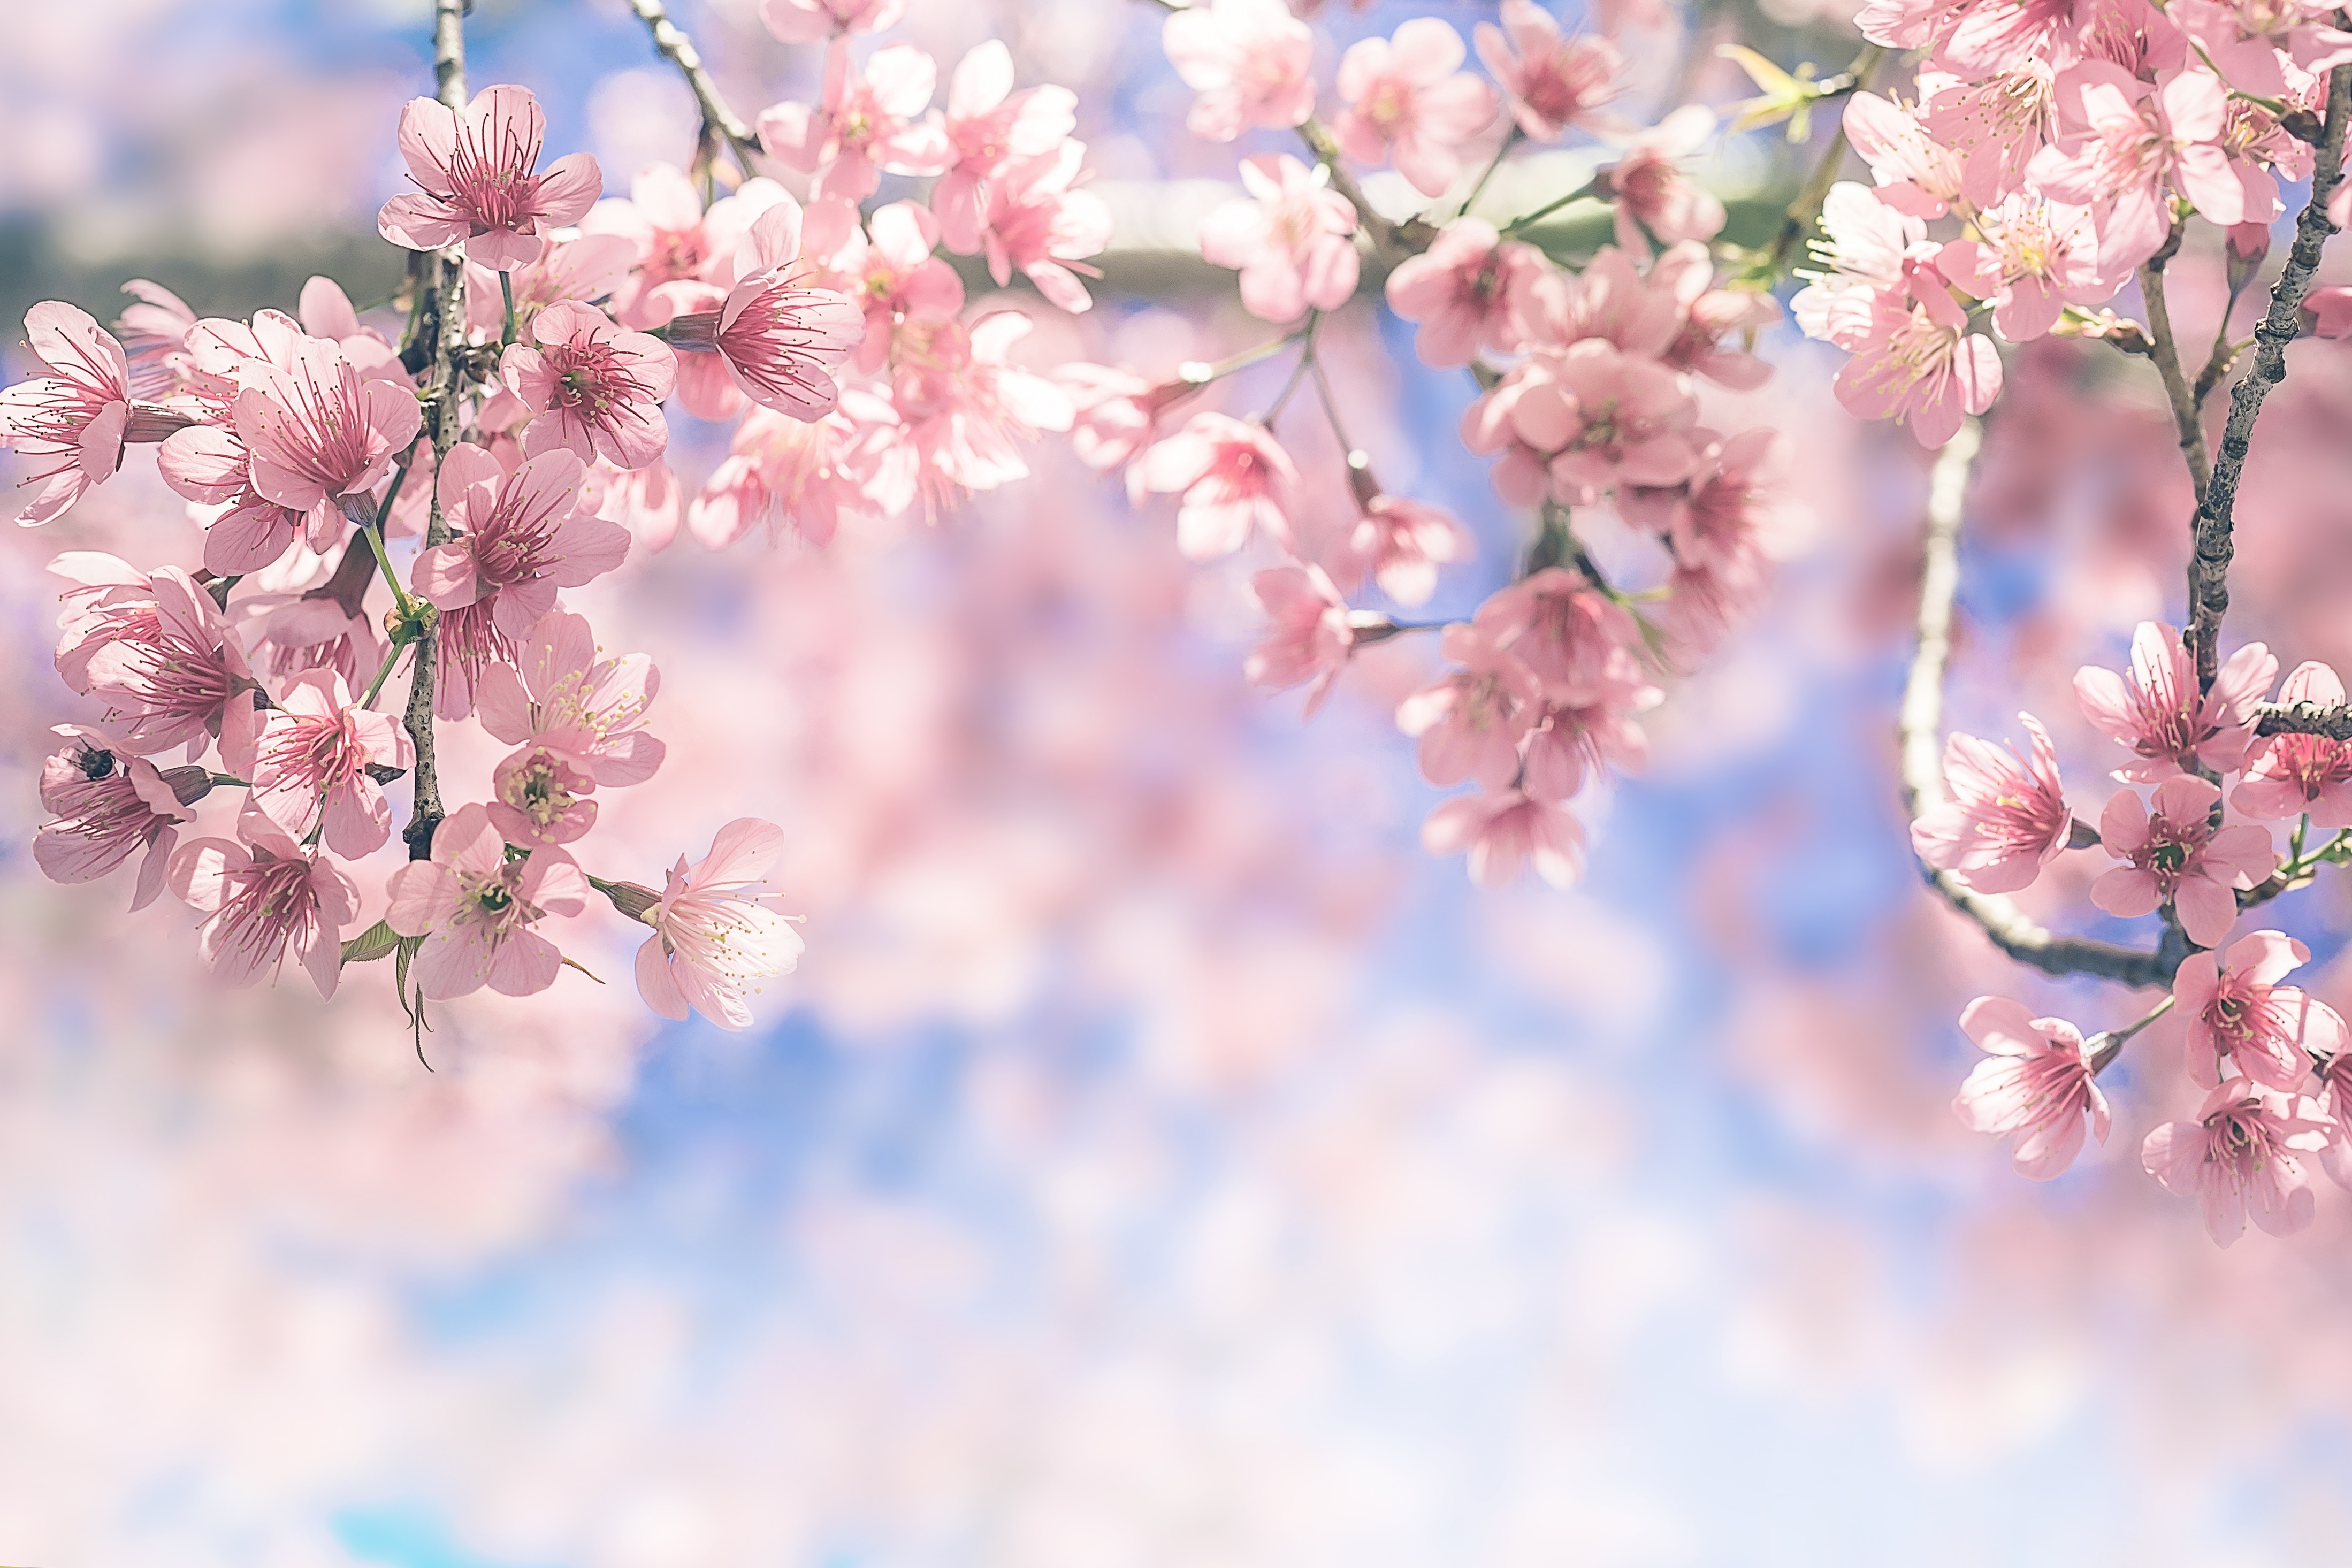 Hoa anh đào là biểu tượng của sự nở rộ của mùa xuân và tình yêu đôi lứa. Đẹp và tinh tế, họa tiết hoa anh đào trên xem cũng như trong cuộc sống đều mang đến cho chúng ta sự bình an và niềm vui. Nhấn vào hình ảnh liên quan để tận hưởng vẻ đẹp lãng mạn này. (Cherry blossom is a symbol of the blooming of spring and love of couples. Beautiful and sophisticated, the cherry blossom pattern in the image as well as in life brings us peace and joy. Click on the related image to enjoy this romantic beauty.)